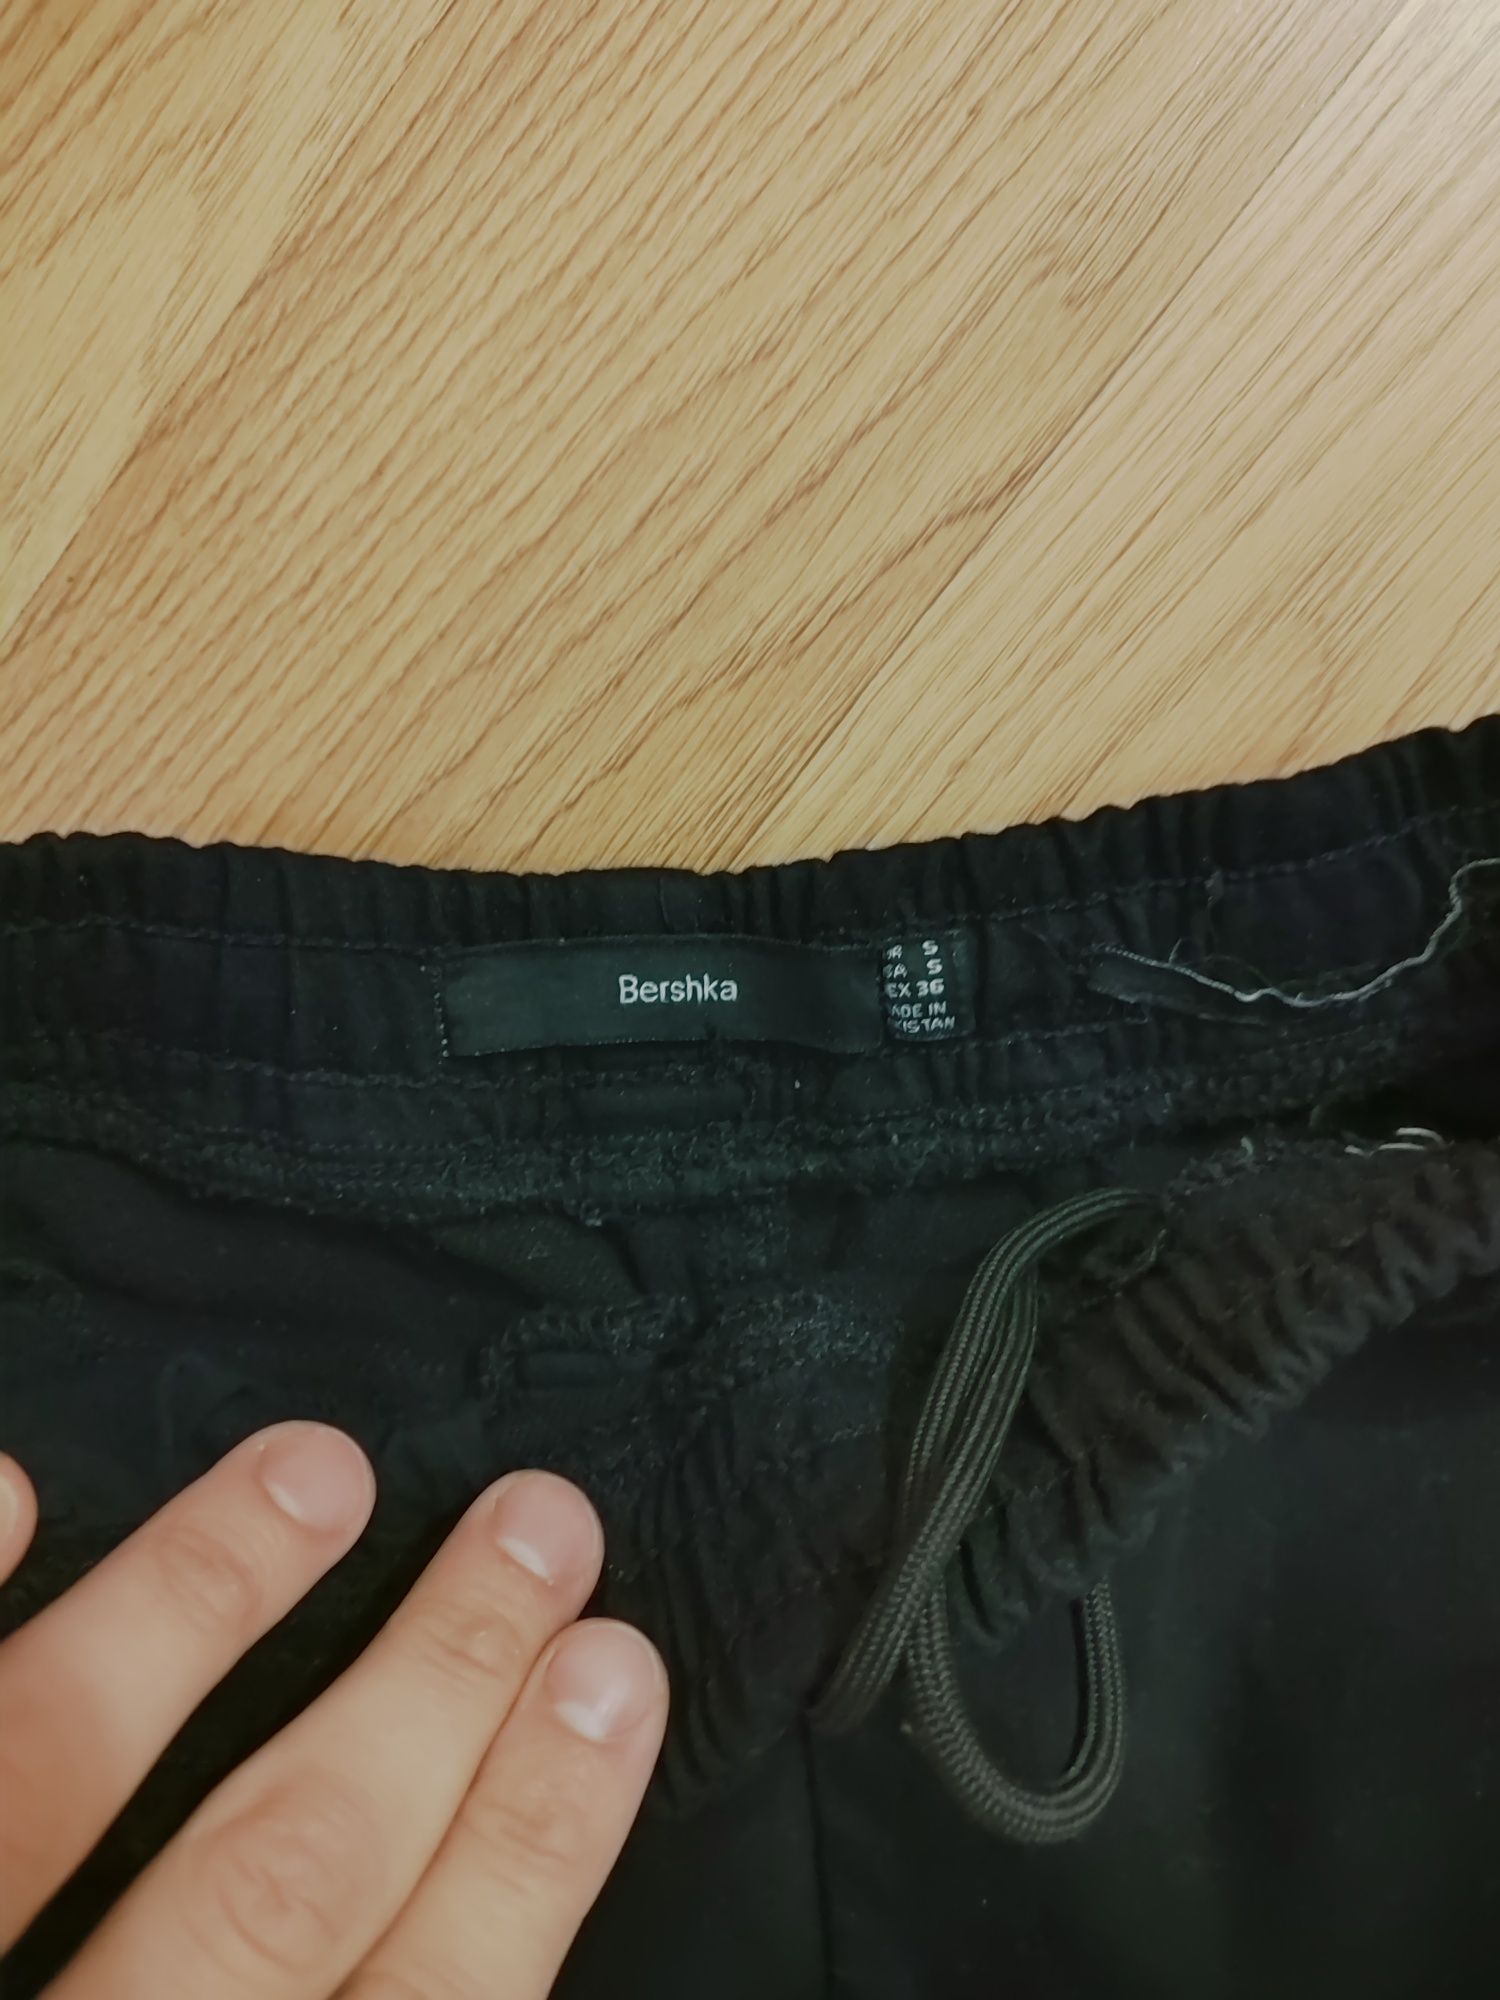 Мужские штаны джогери Bershka размер S